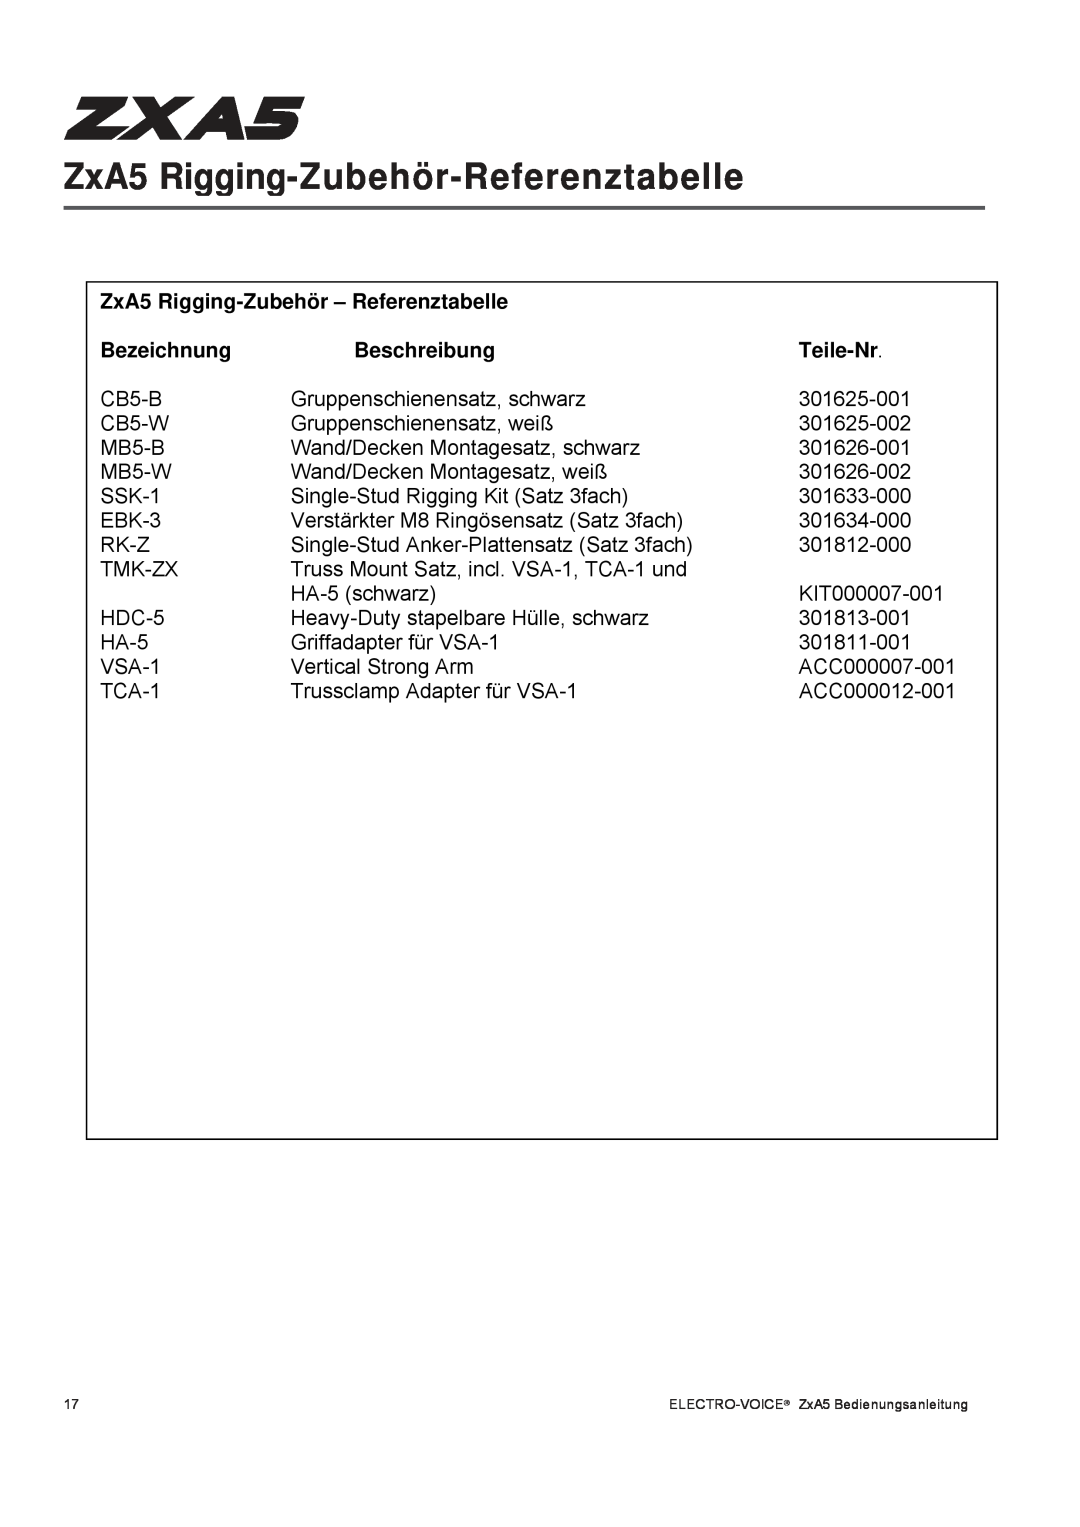 Pentax ZXA5-60 ZxA5 Rigging-Zubehör-Referenztabelle, ZxA5 Rigging-Zubehör- Referenztabelle, Bezeichnung, Beschreibung 